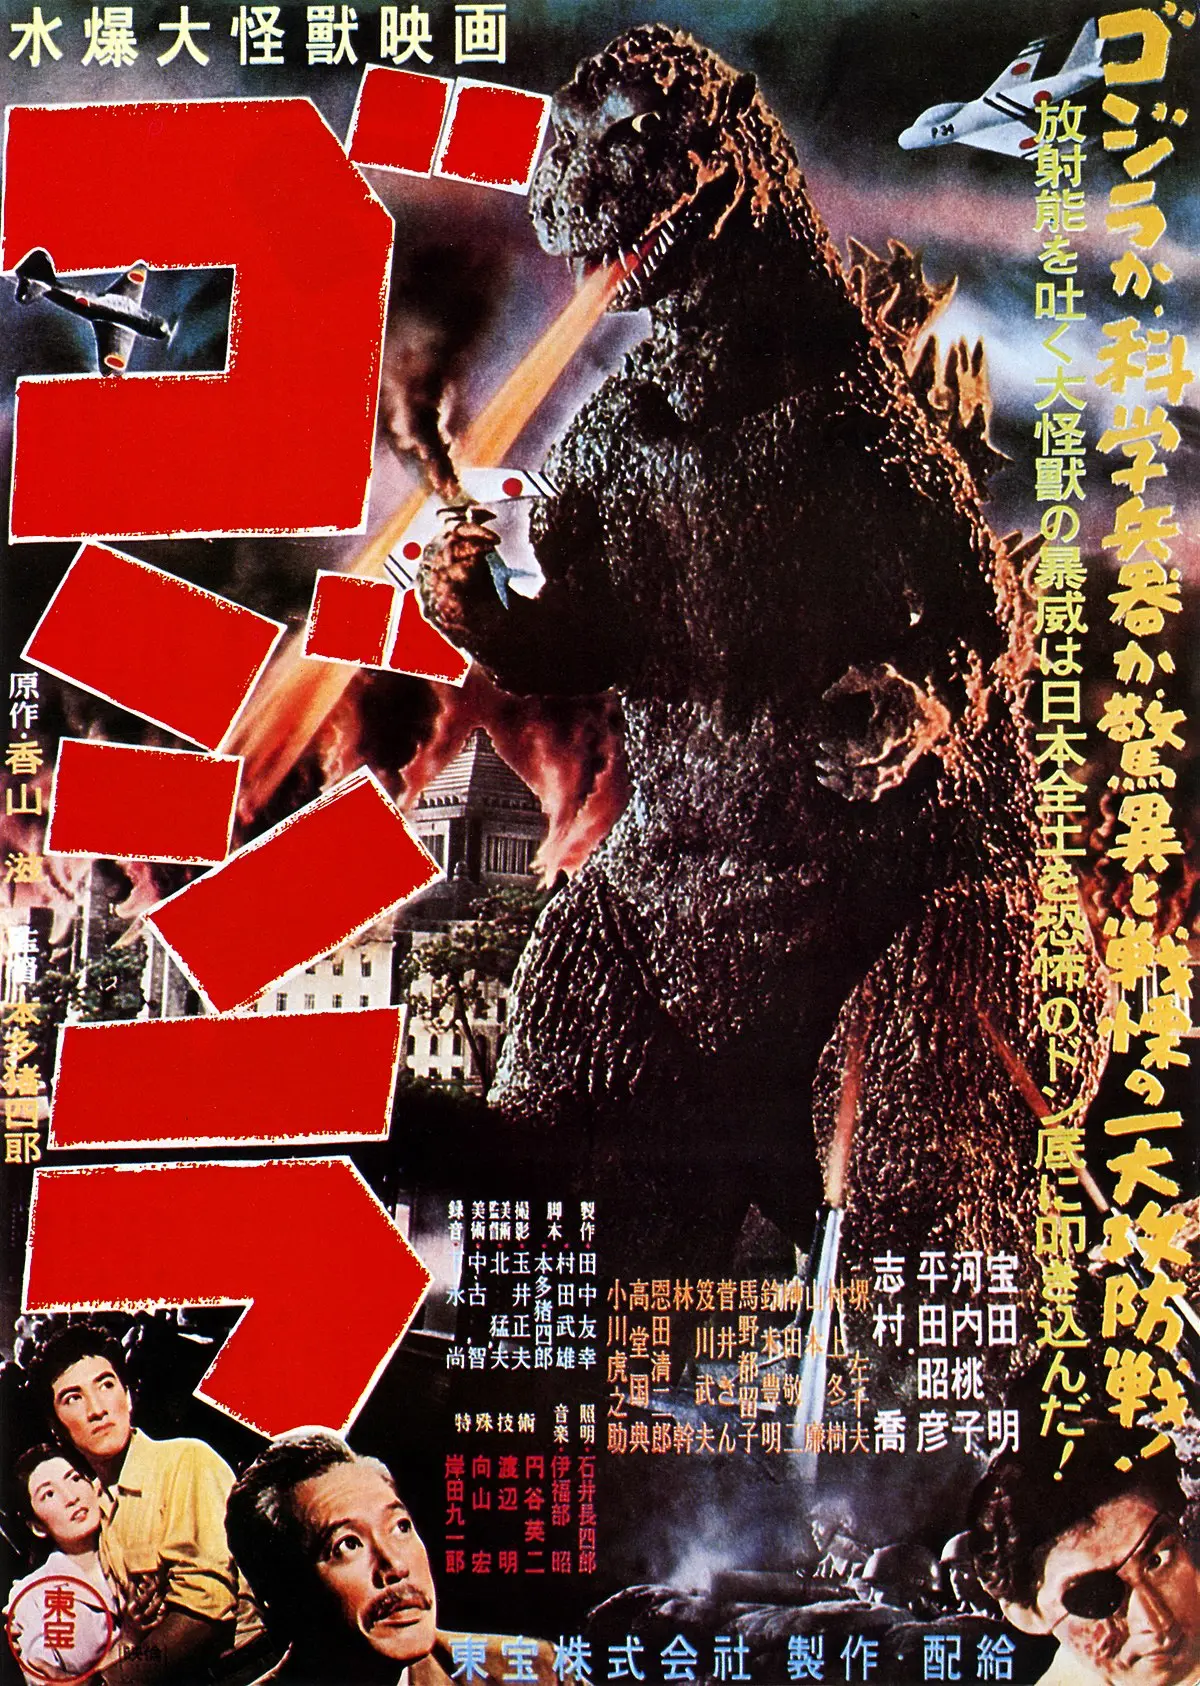 Godzilla (película de 1954) - Wikipedia, la enciclopedia libre